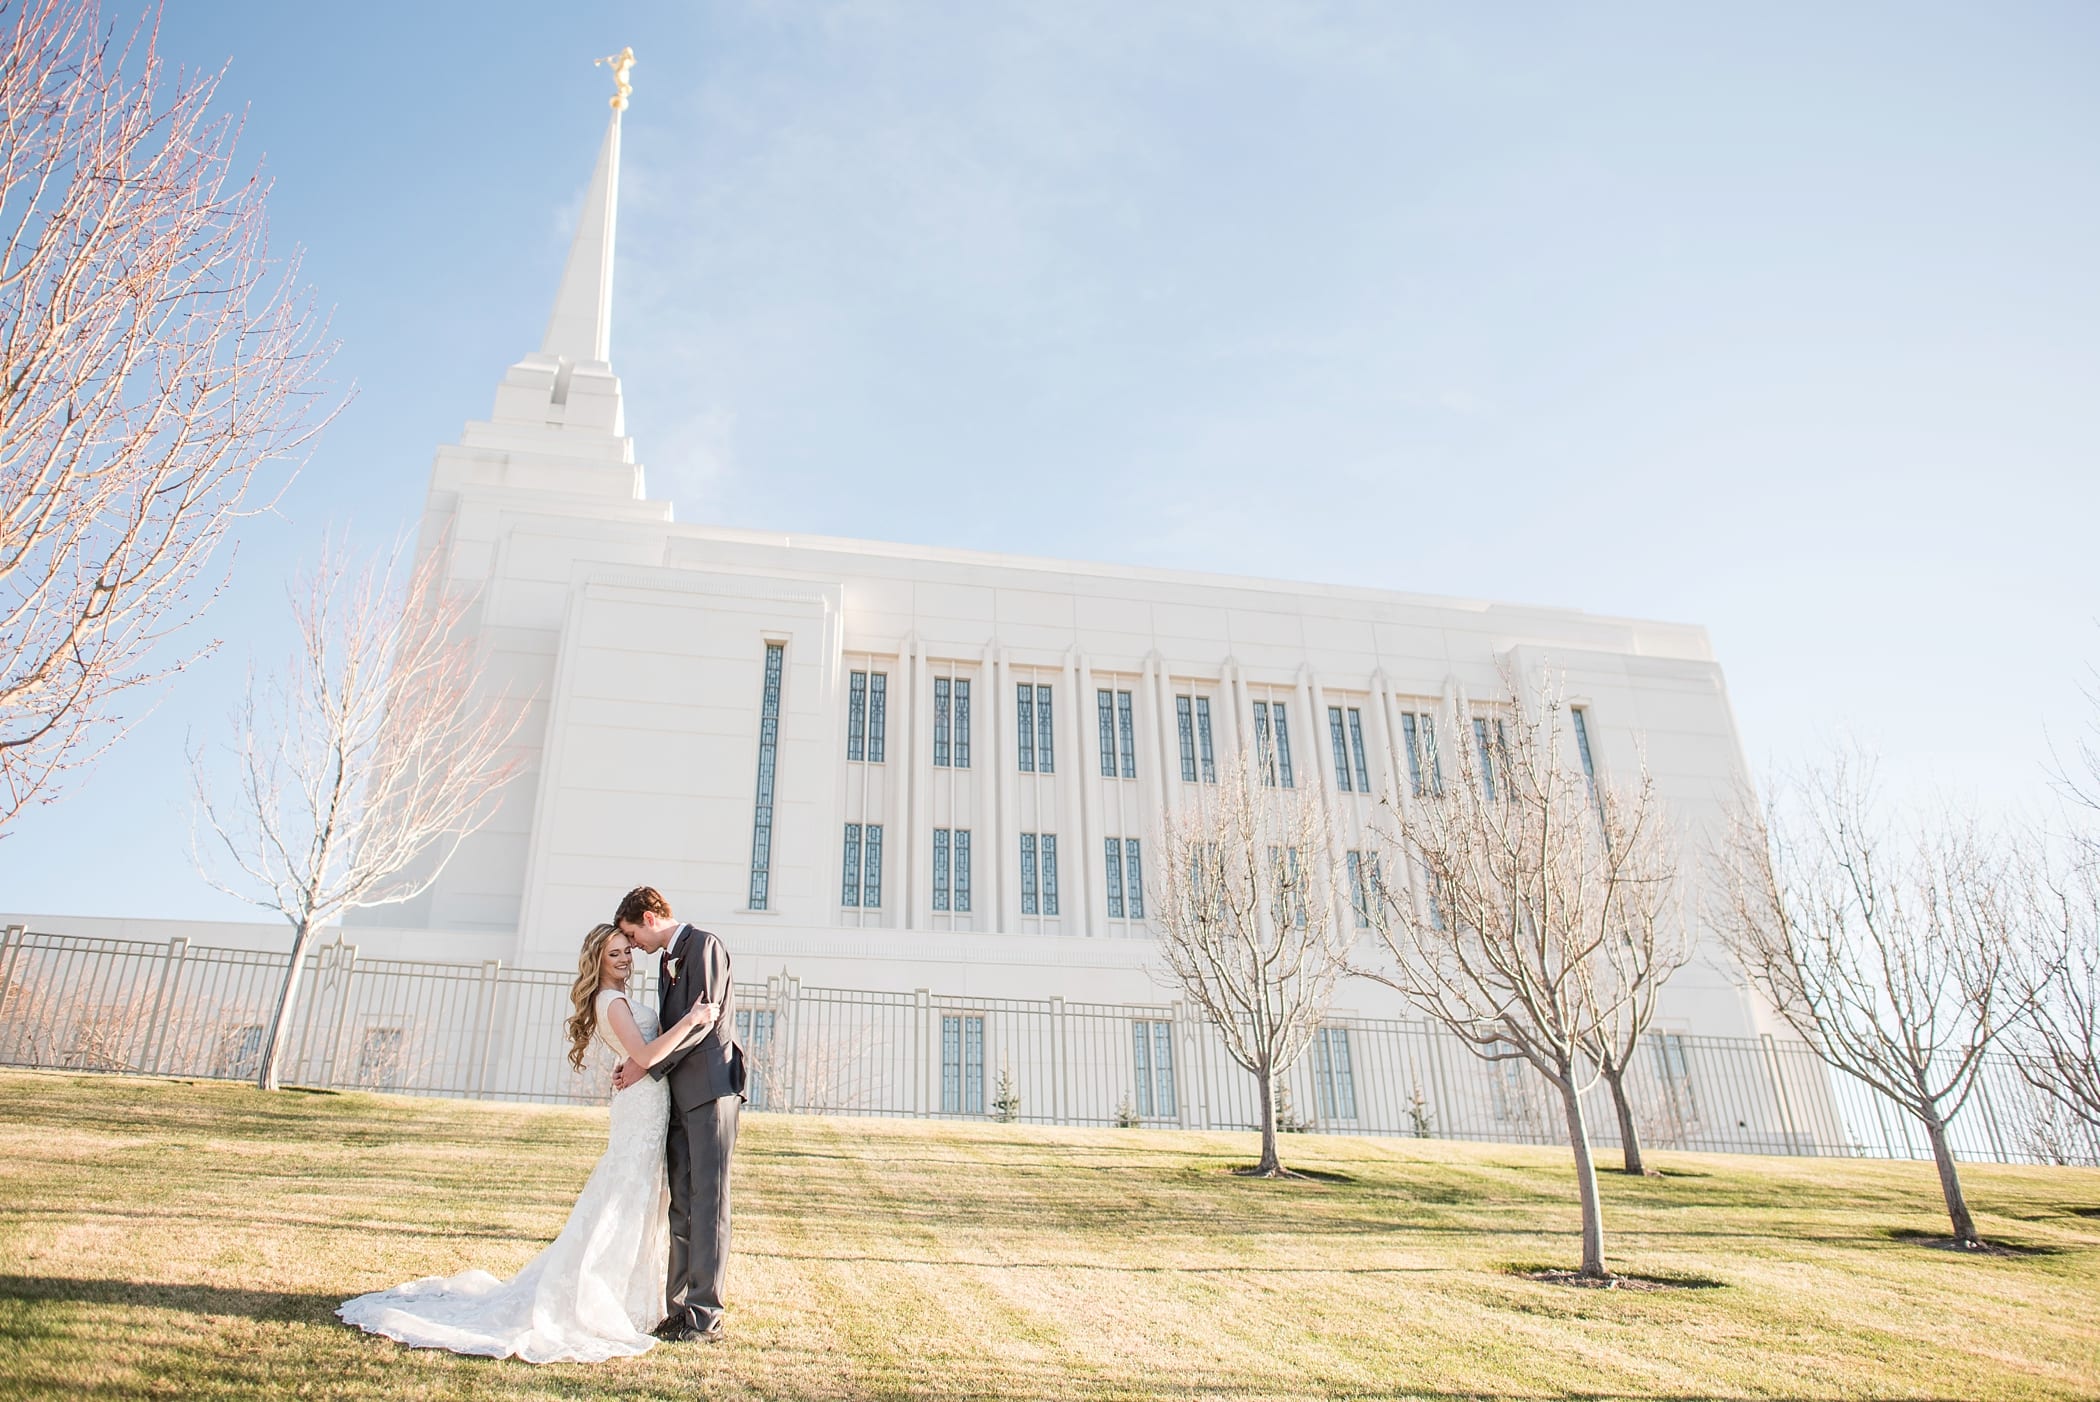 Rexburg LDS temple bridals by Michelle & Logan_0025